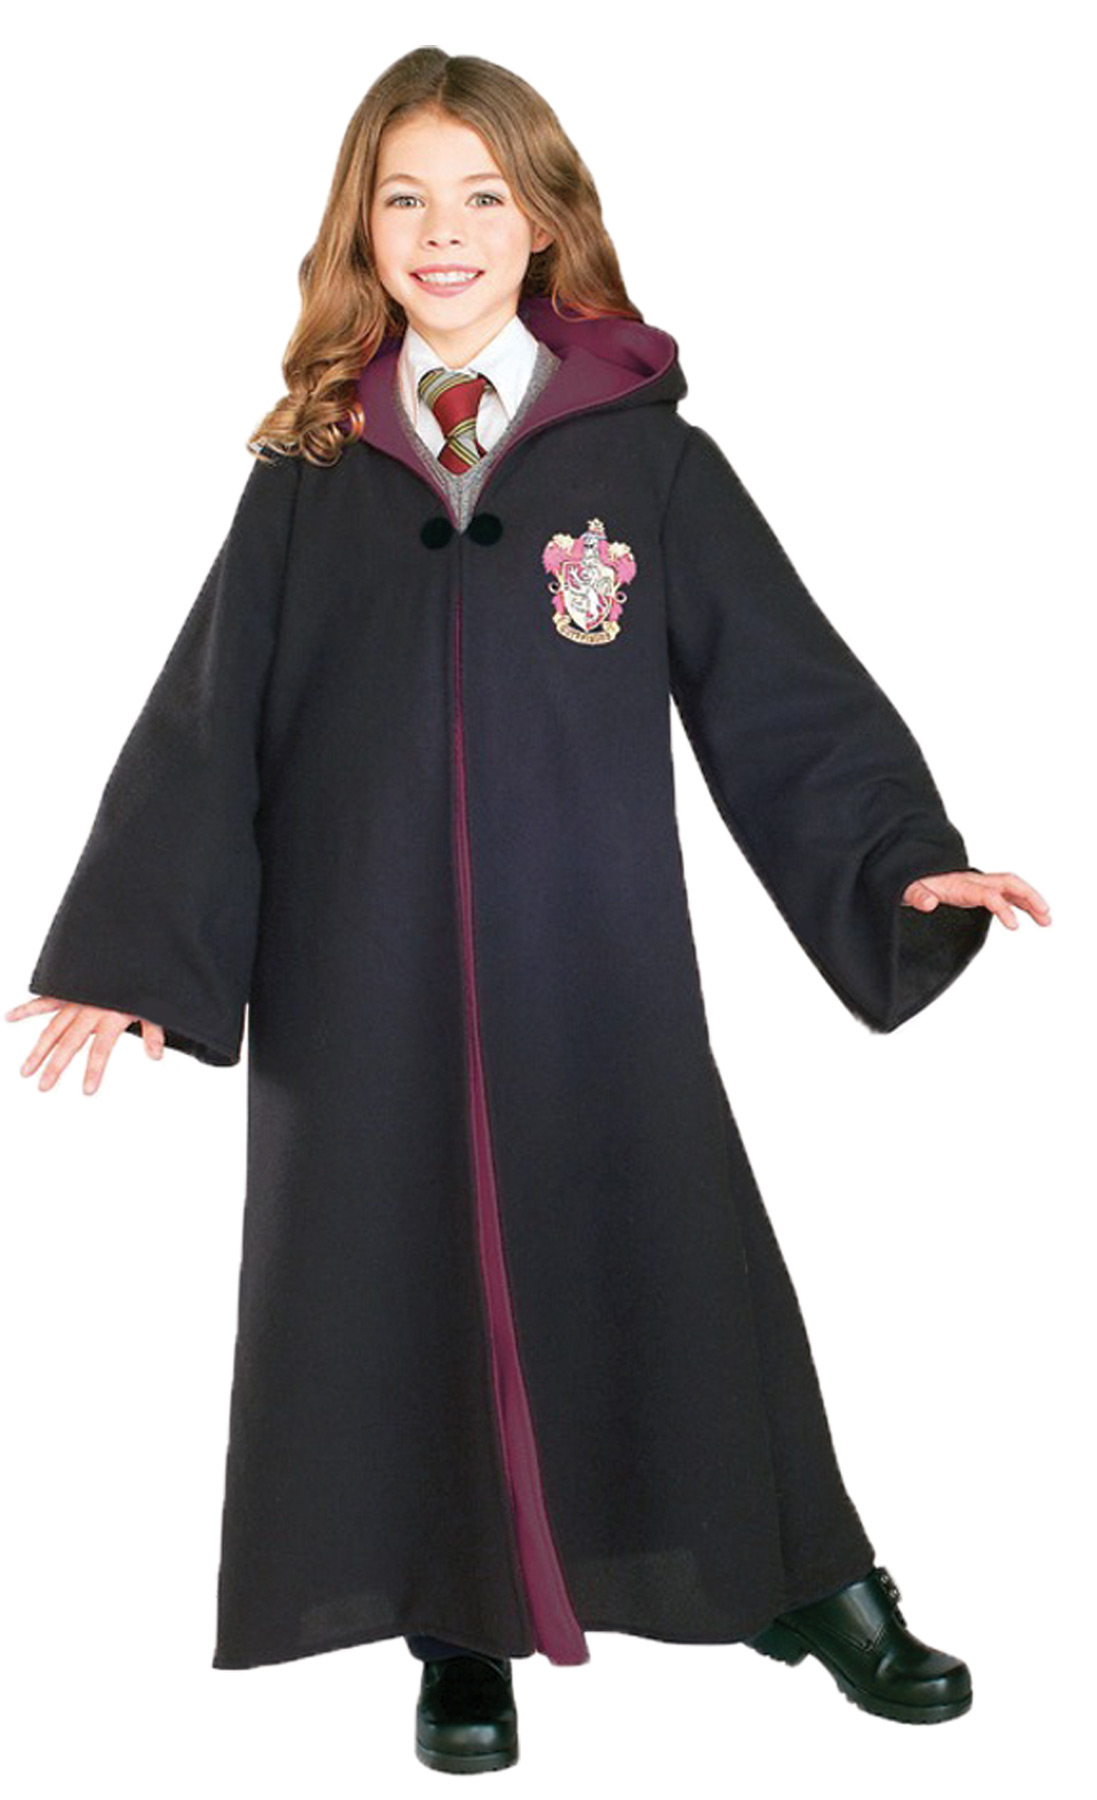 Déguisements Harry Potter© » Costume adulte ou enfant